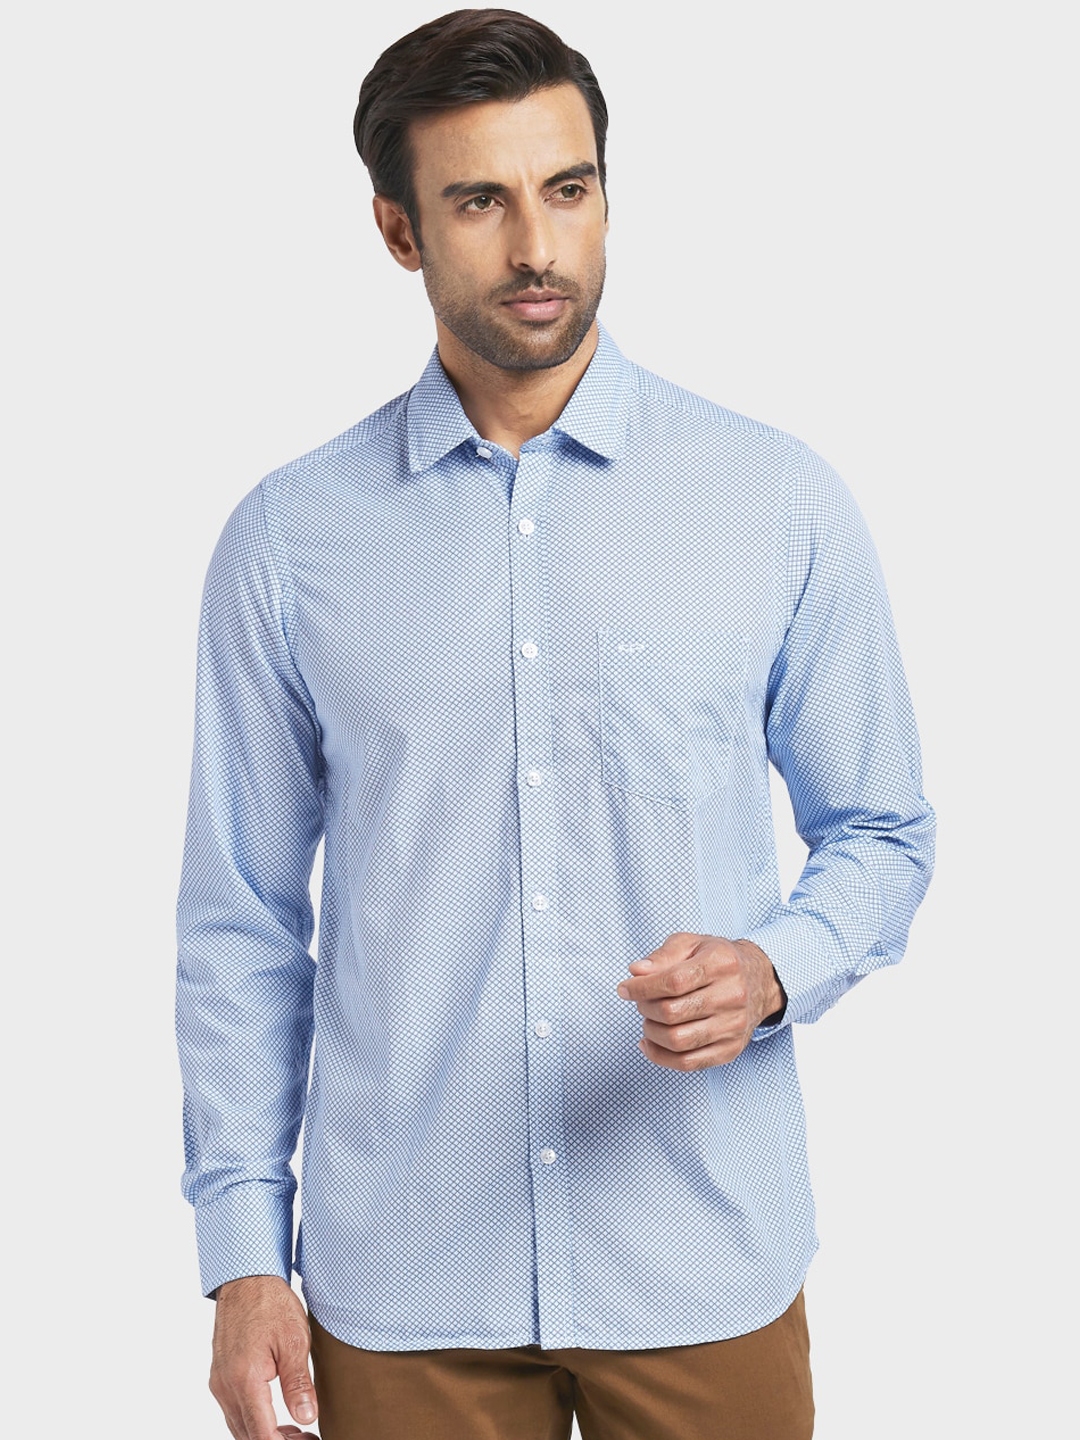 Buy ColorPlus Men Blue & White Regular Fit Printed Casual Shirt ...